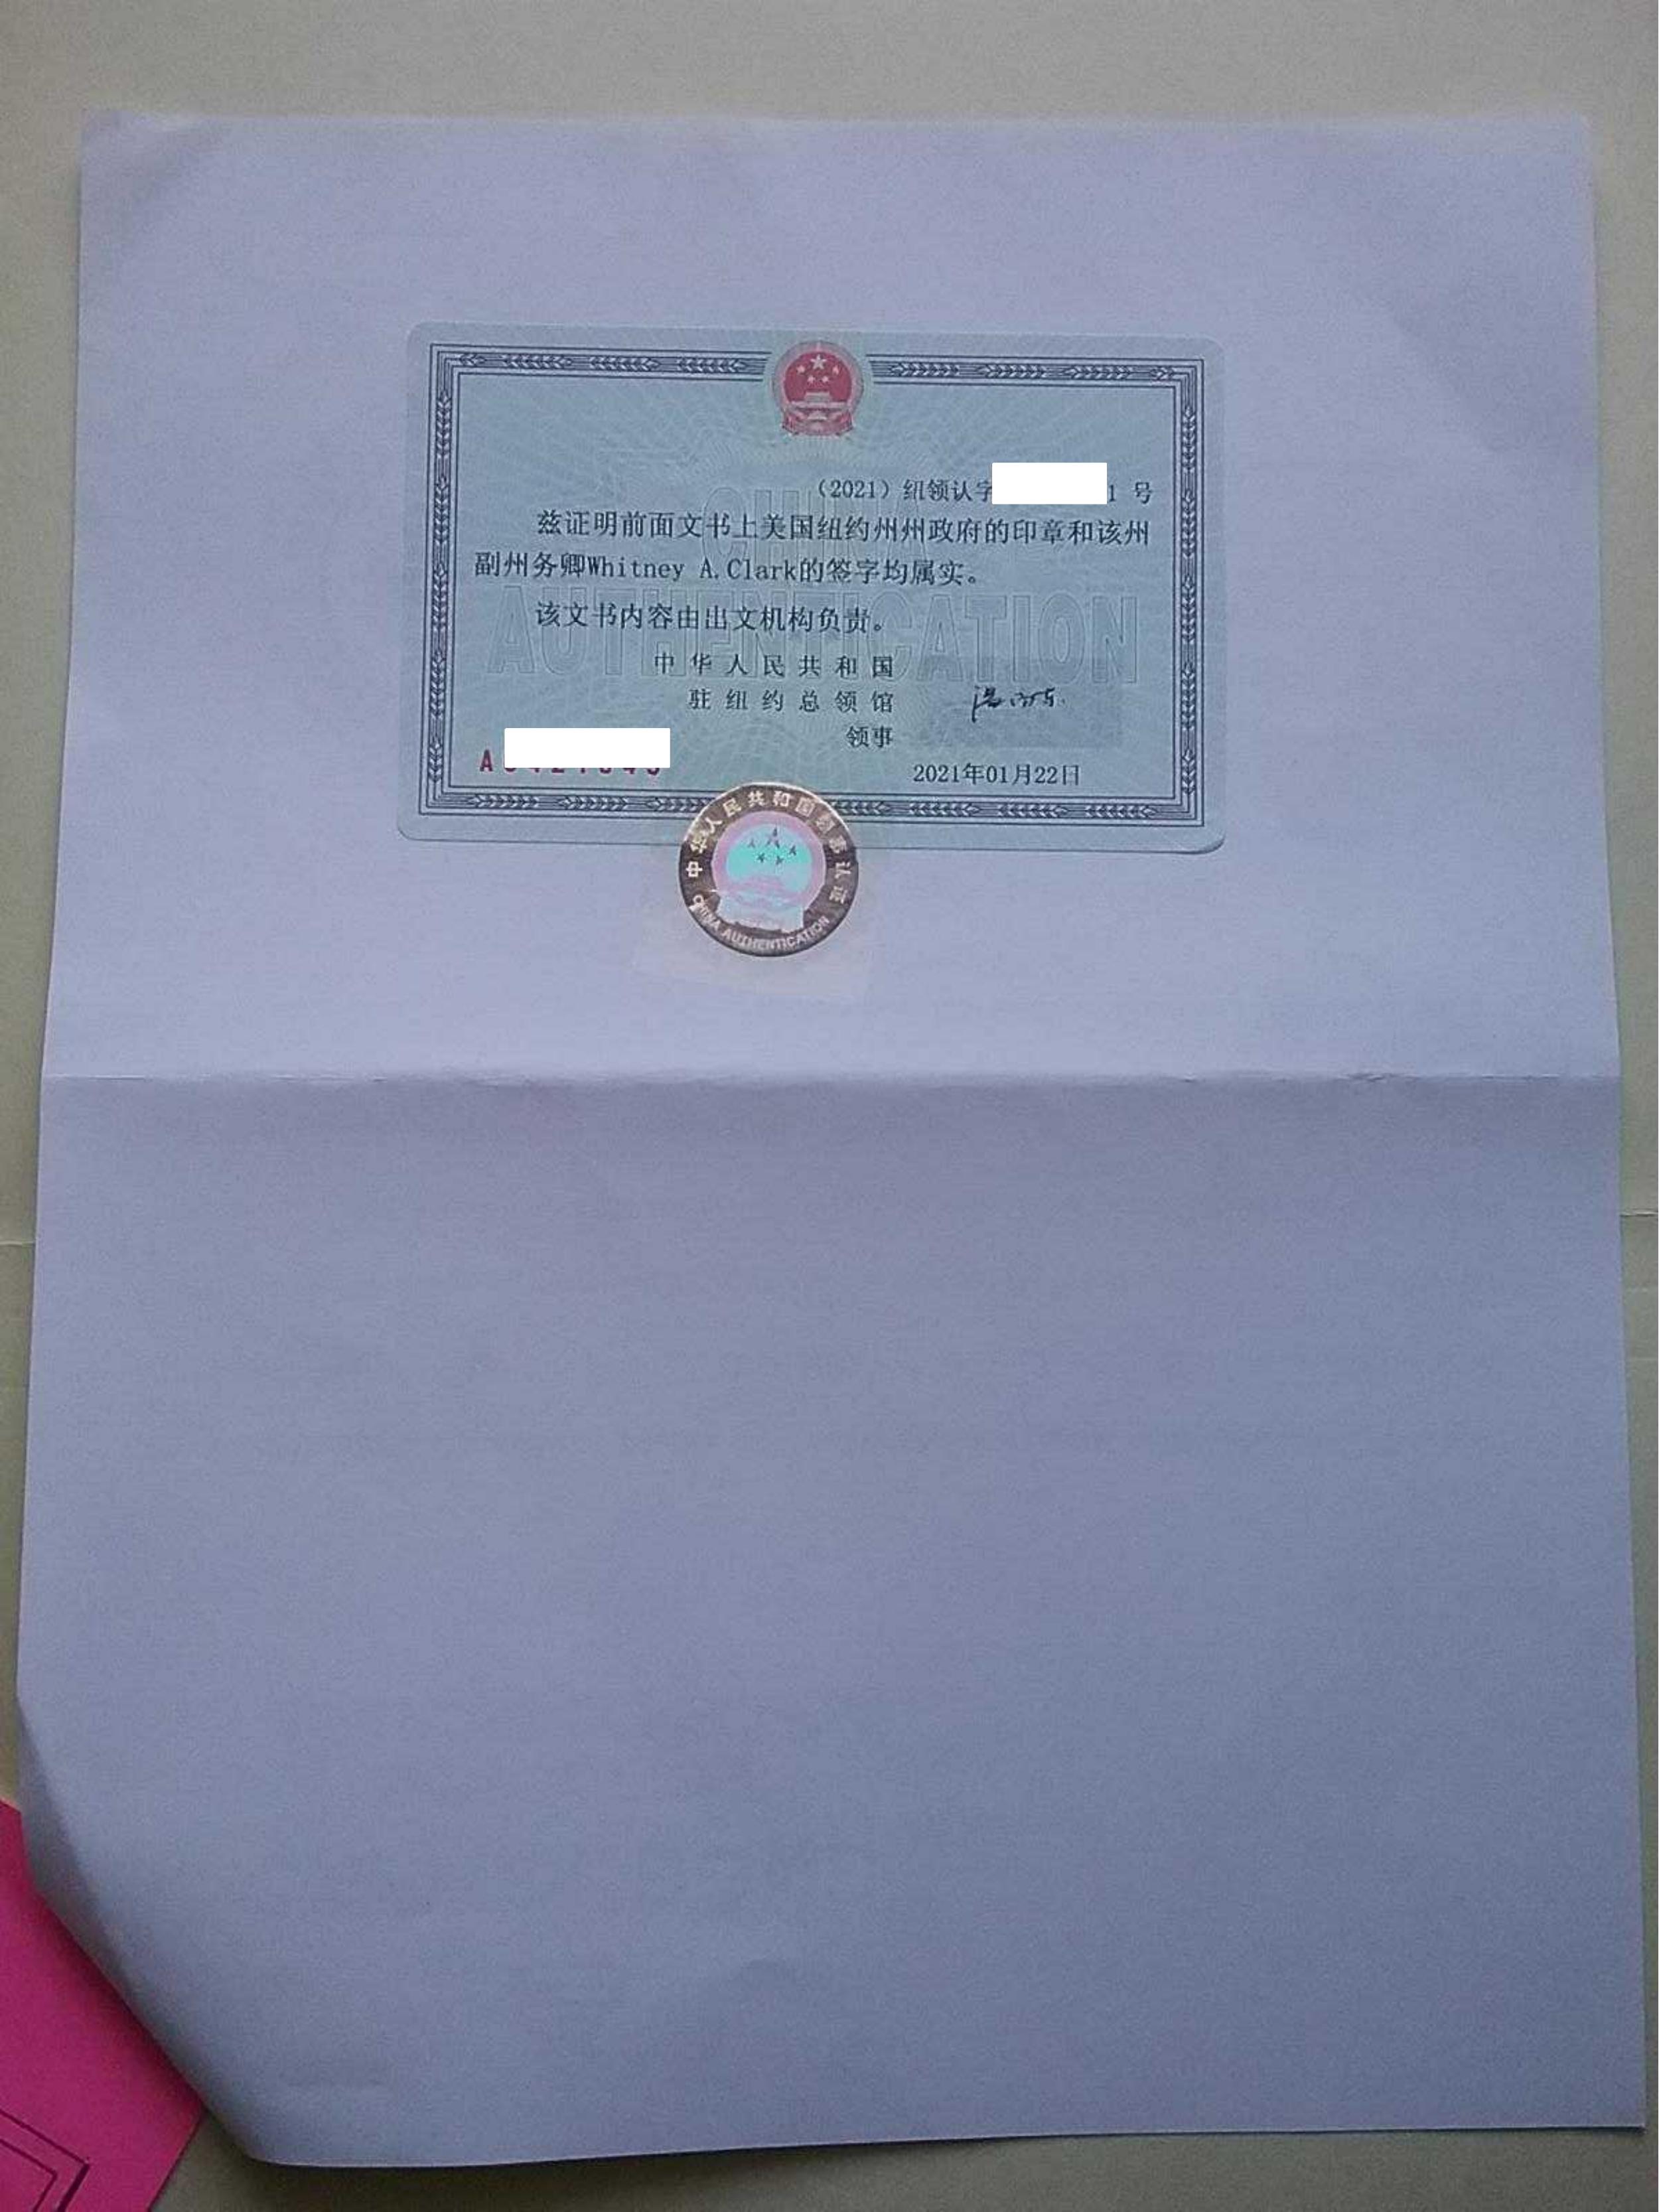 美国Tesol证书中国领馆认证